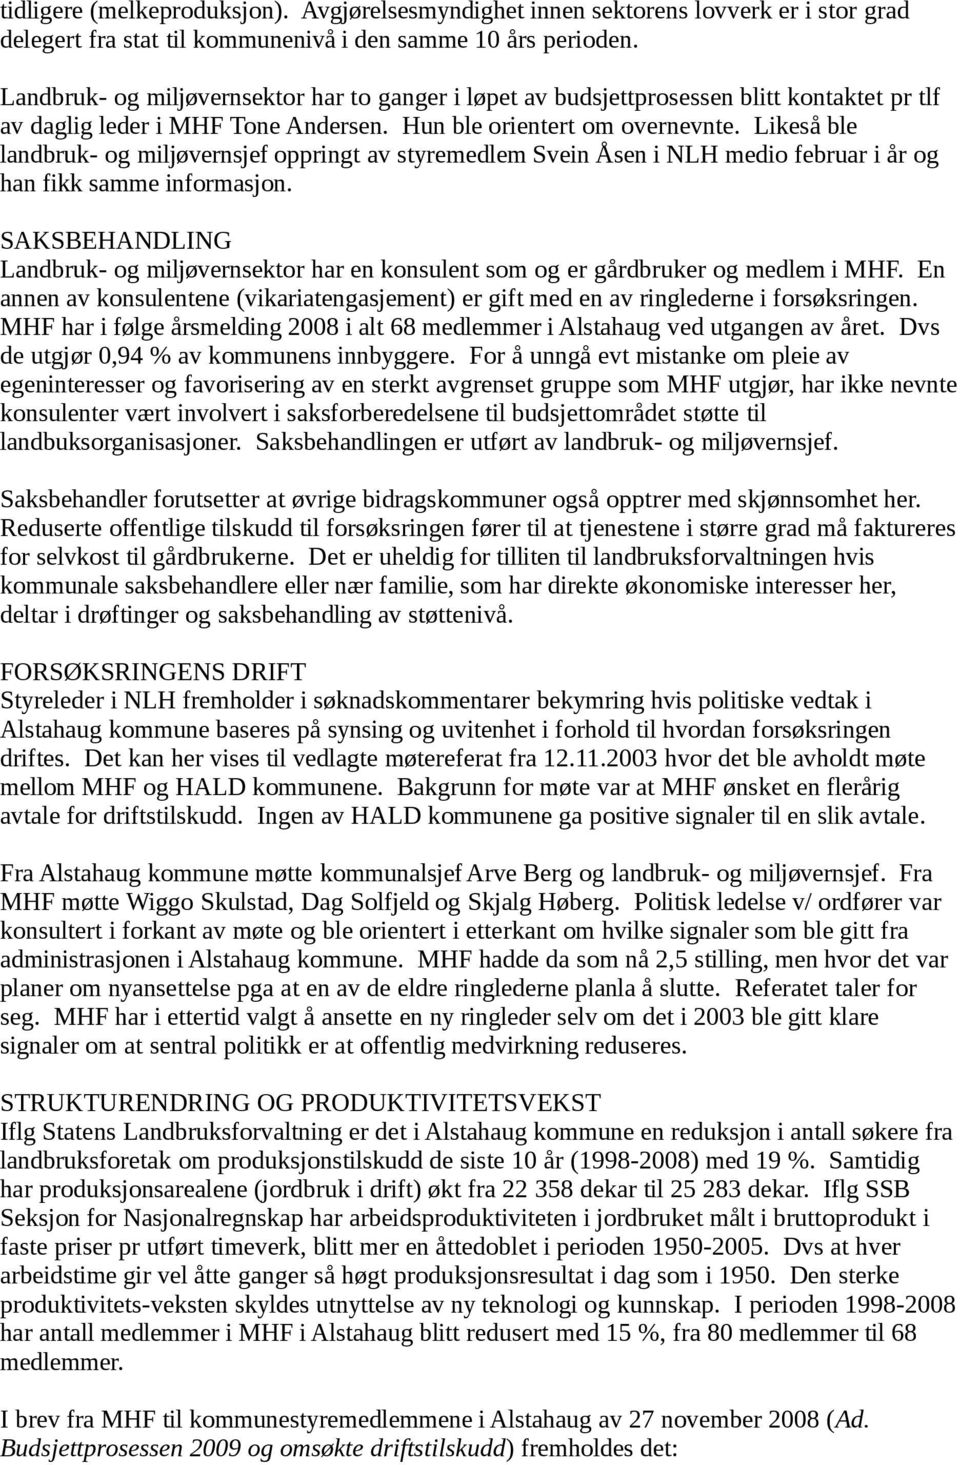 Likeså ble landbruk- og miljøvernsjef oppringt av styremedlem Svein Åsen i NLH medio februar i år og han fikk samme informasjon.